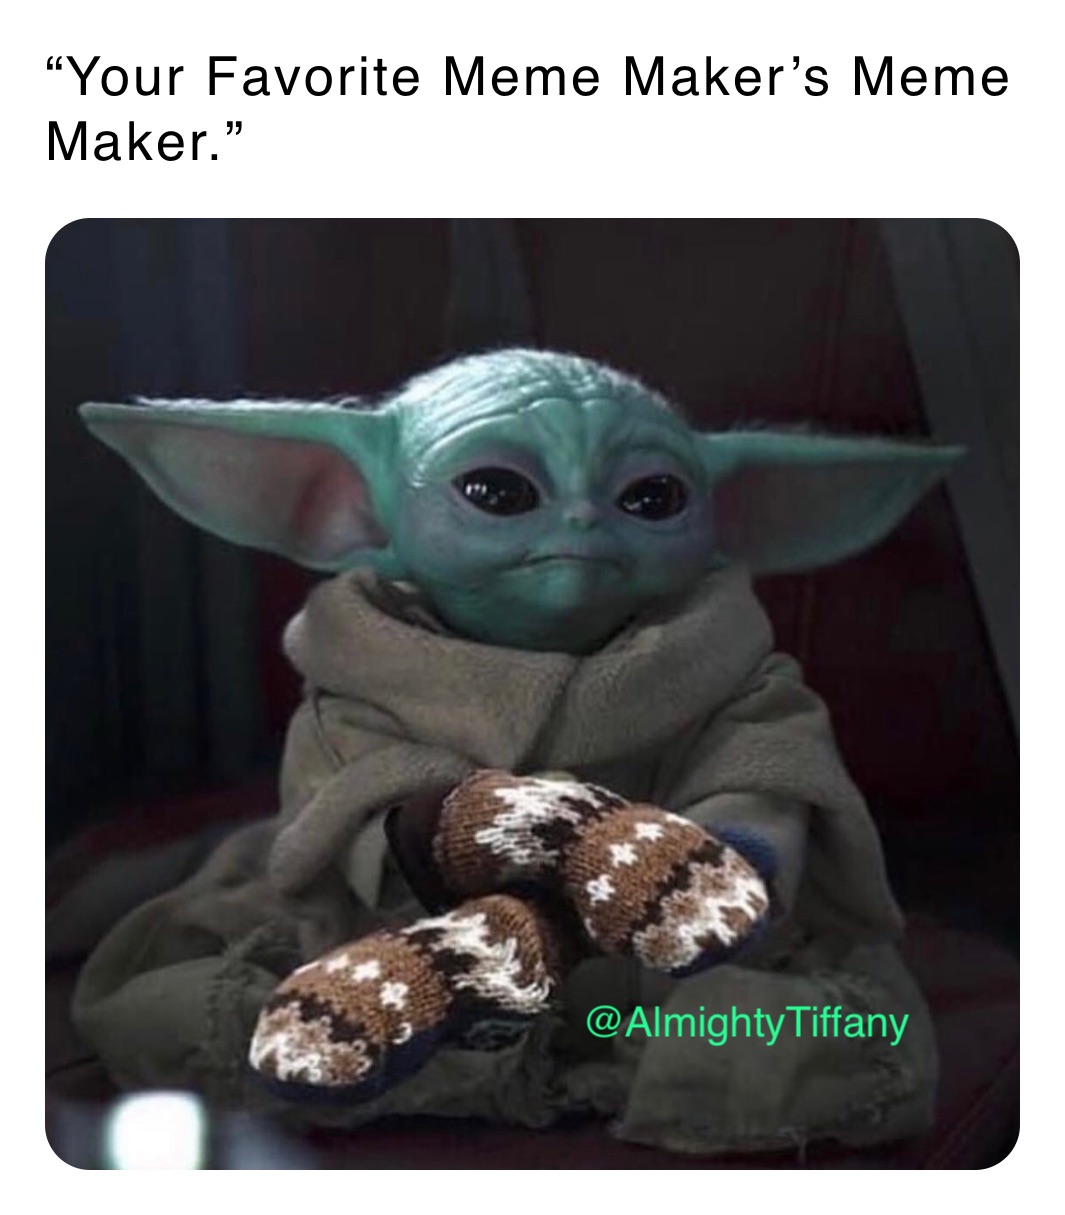 “Your Favorite Meme Maker’s Meme Maker.”